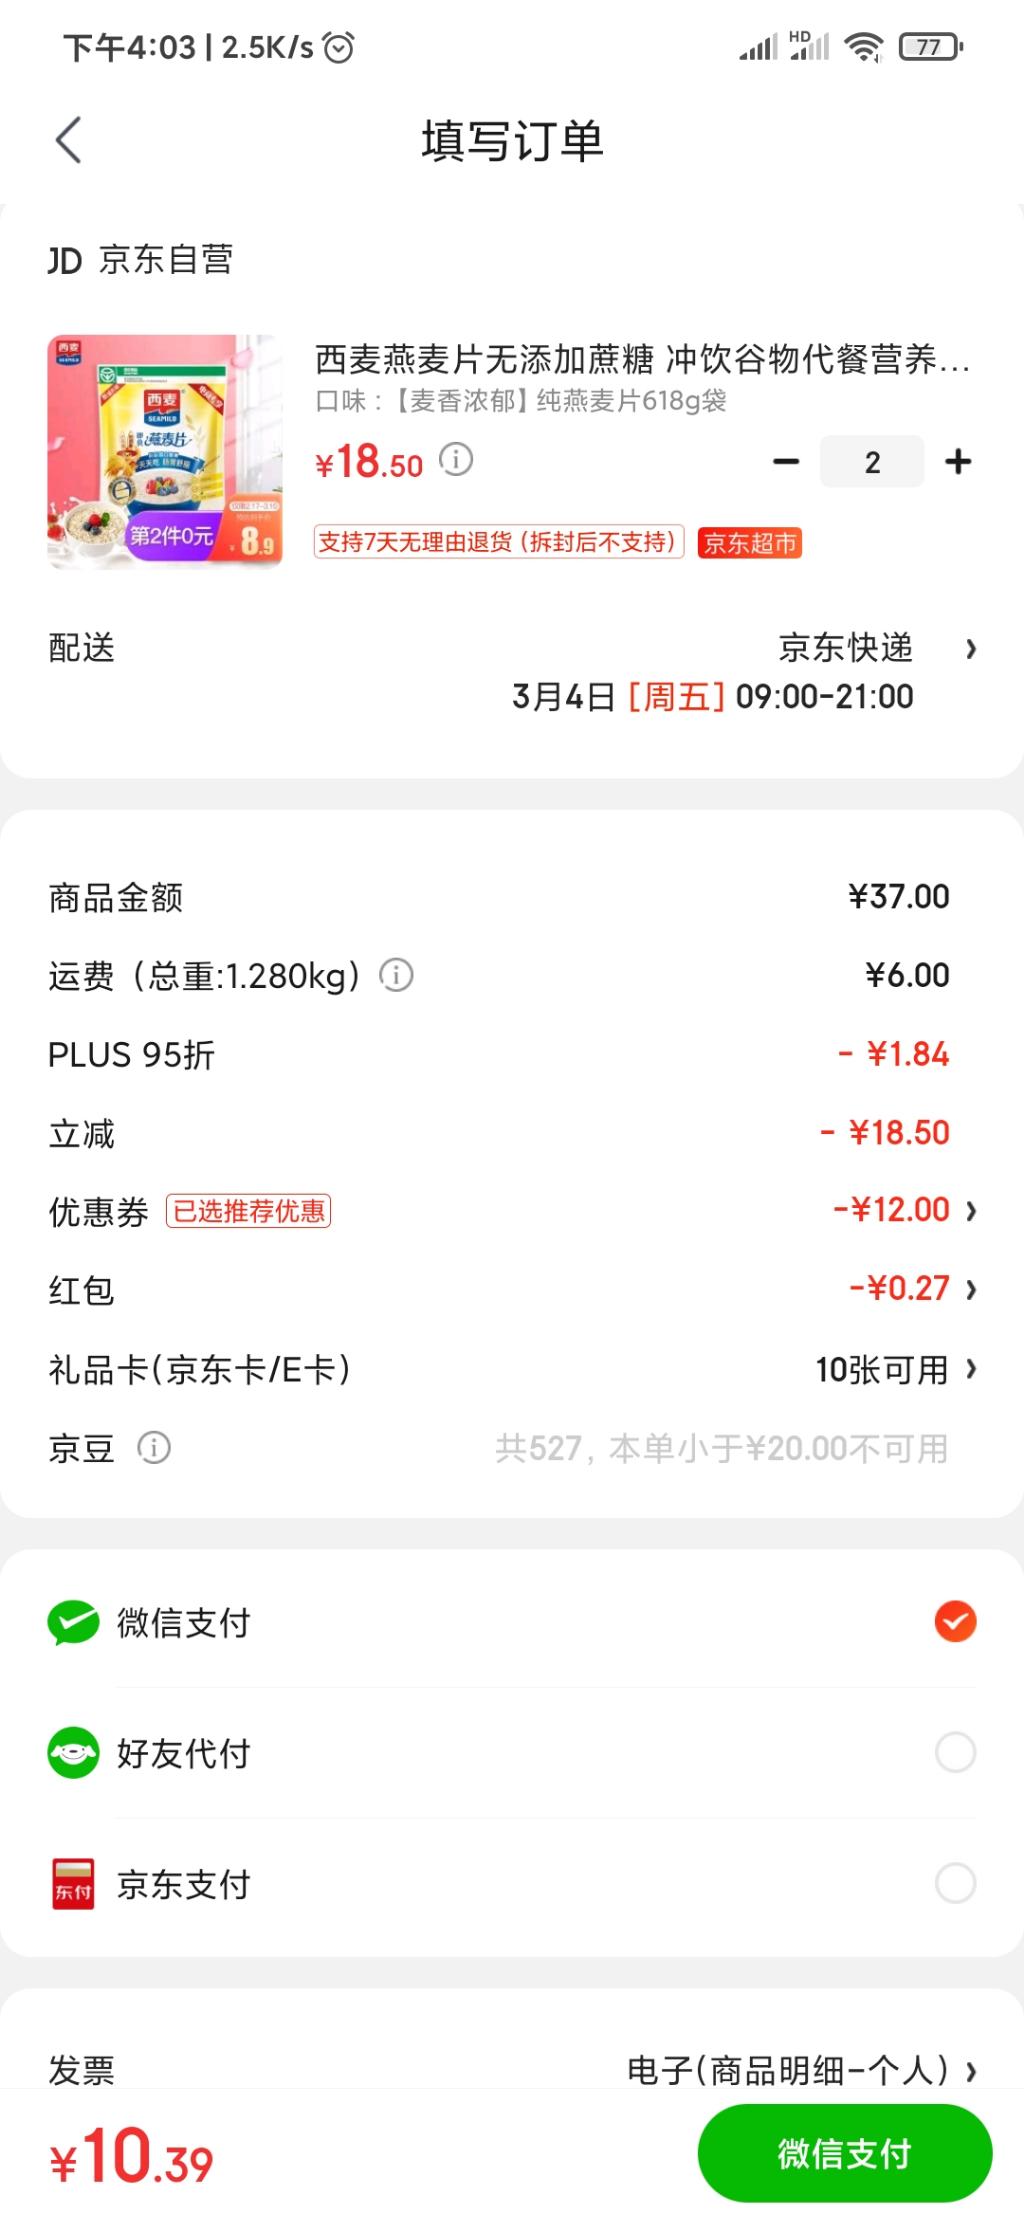 燕麦片plus号10元2包-需运费券-惠小助(52huixz.com)